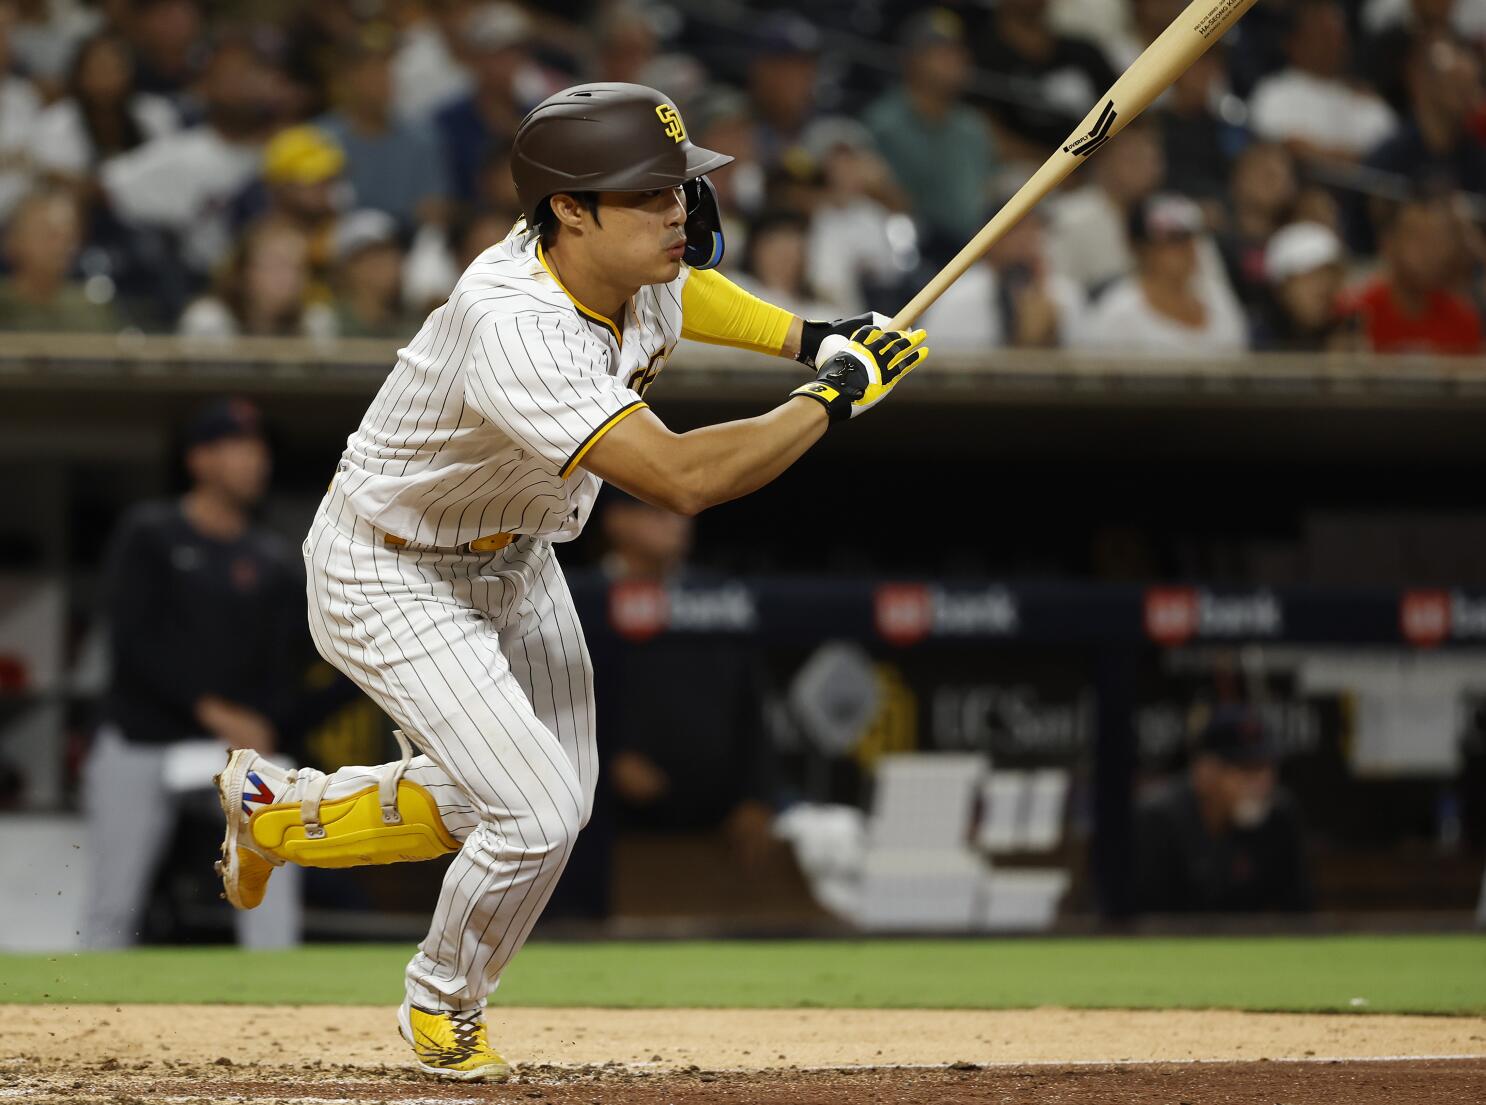 Padres' Kim Ha-seong hits 1st MLB homer in victory